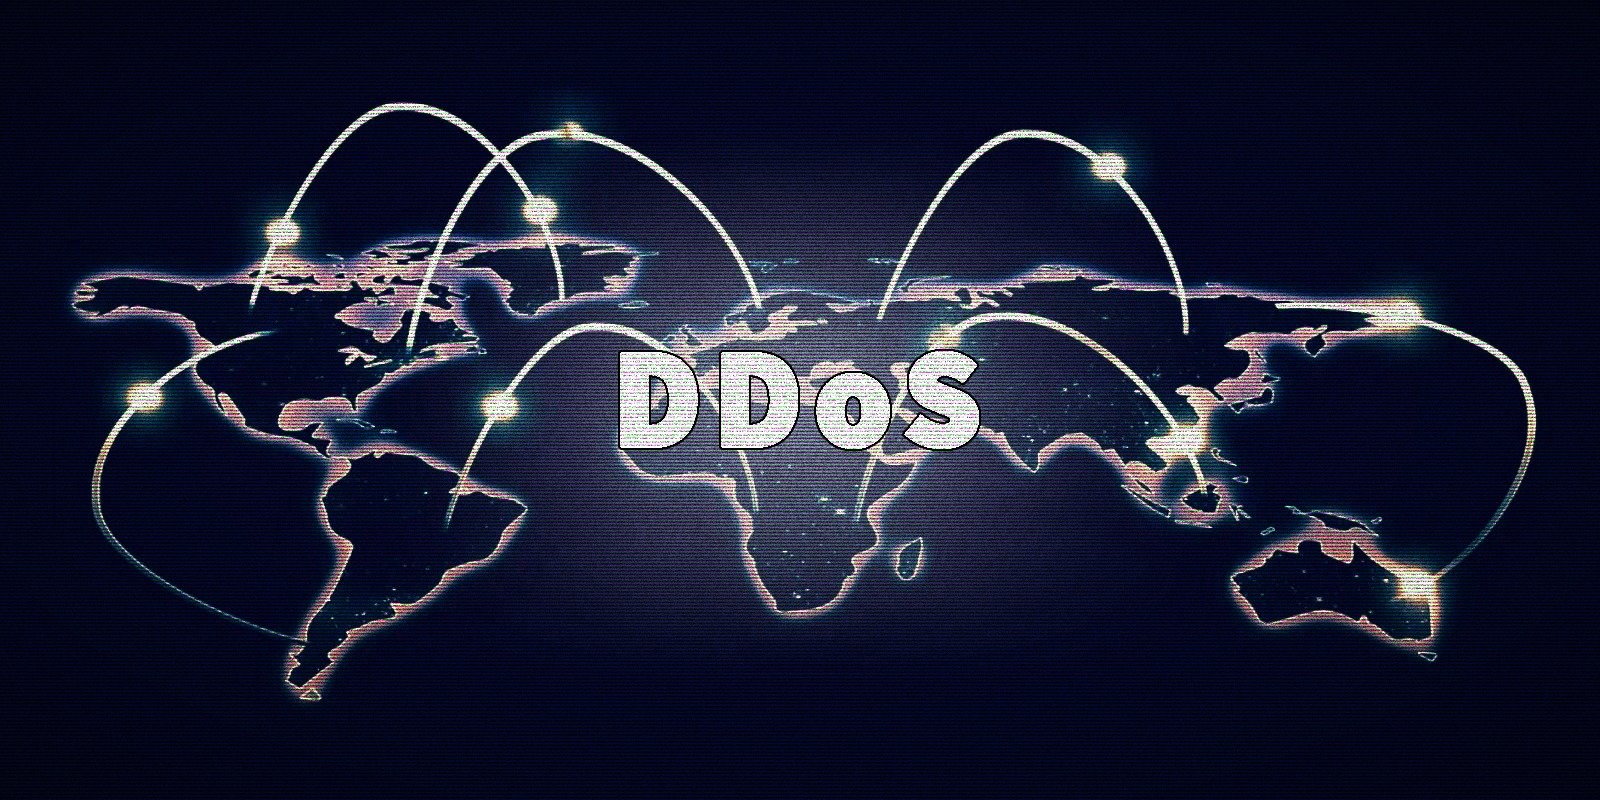 มัลแวร์ RapperBot ที่อัปเดตมีเป้าหมายที่เซิร์ฟเวอร์เกมในการโจมตี DDoS